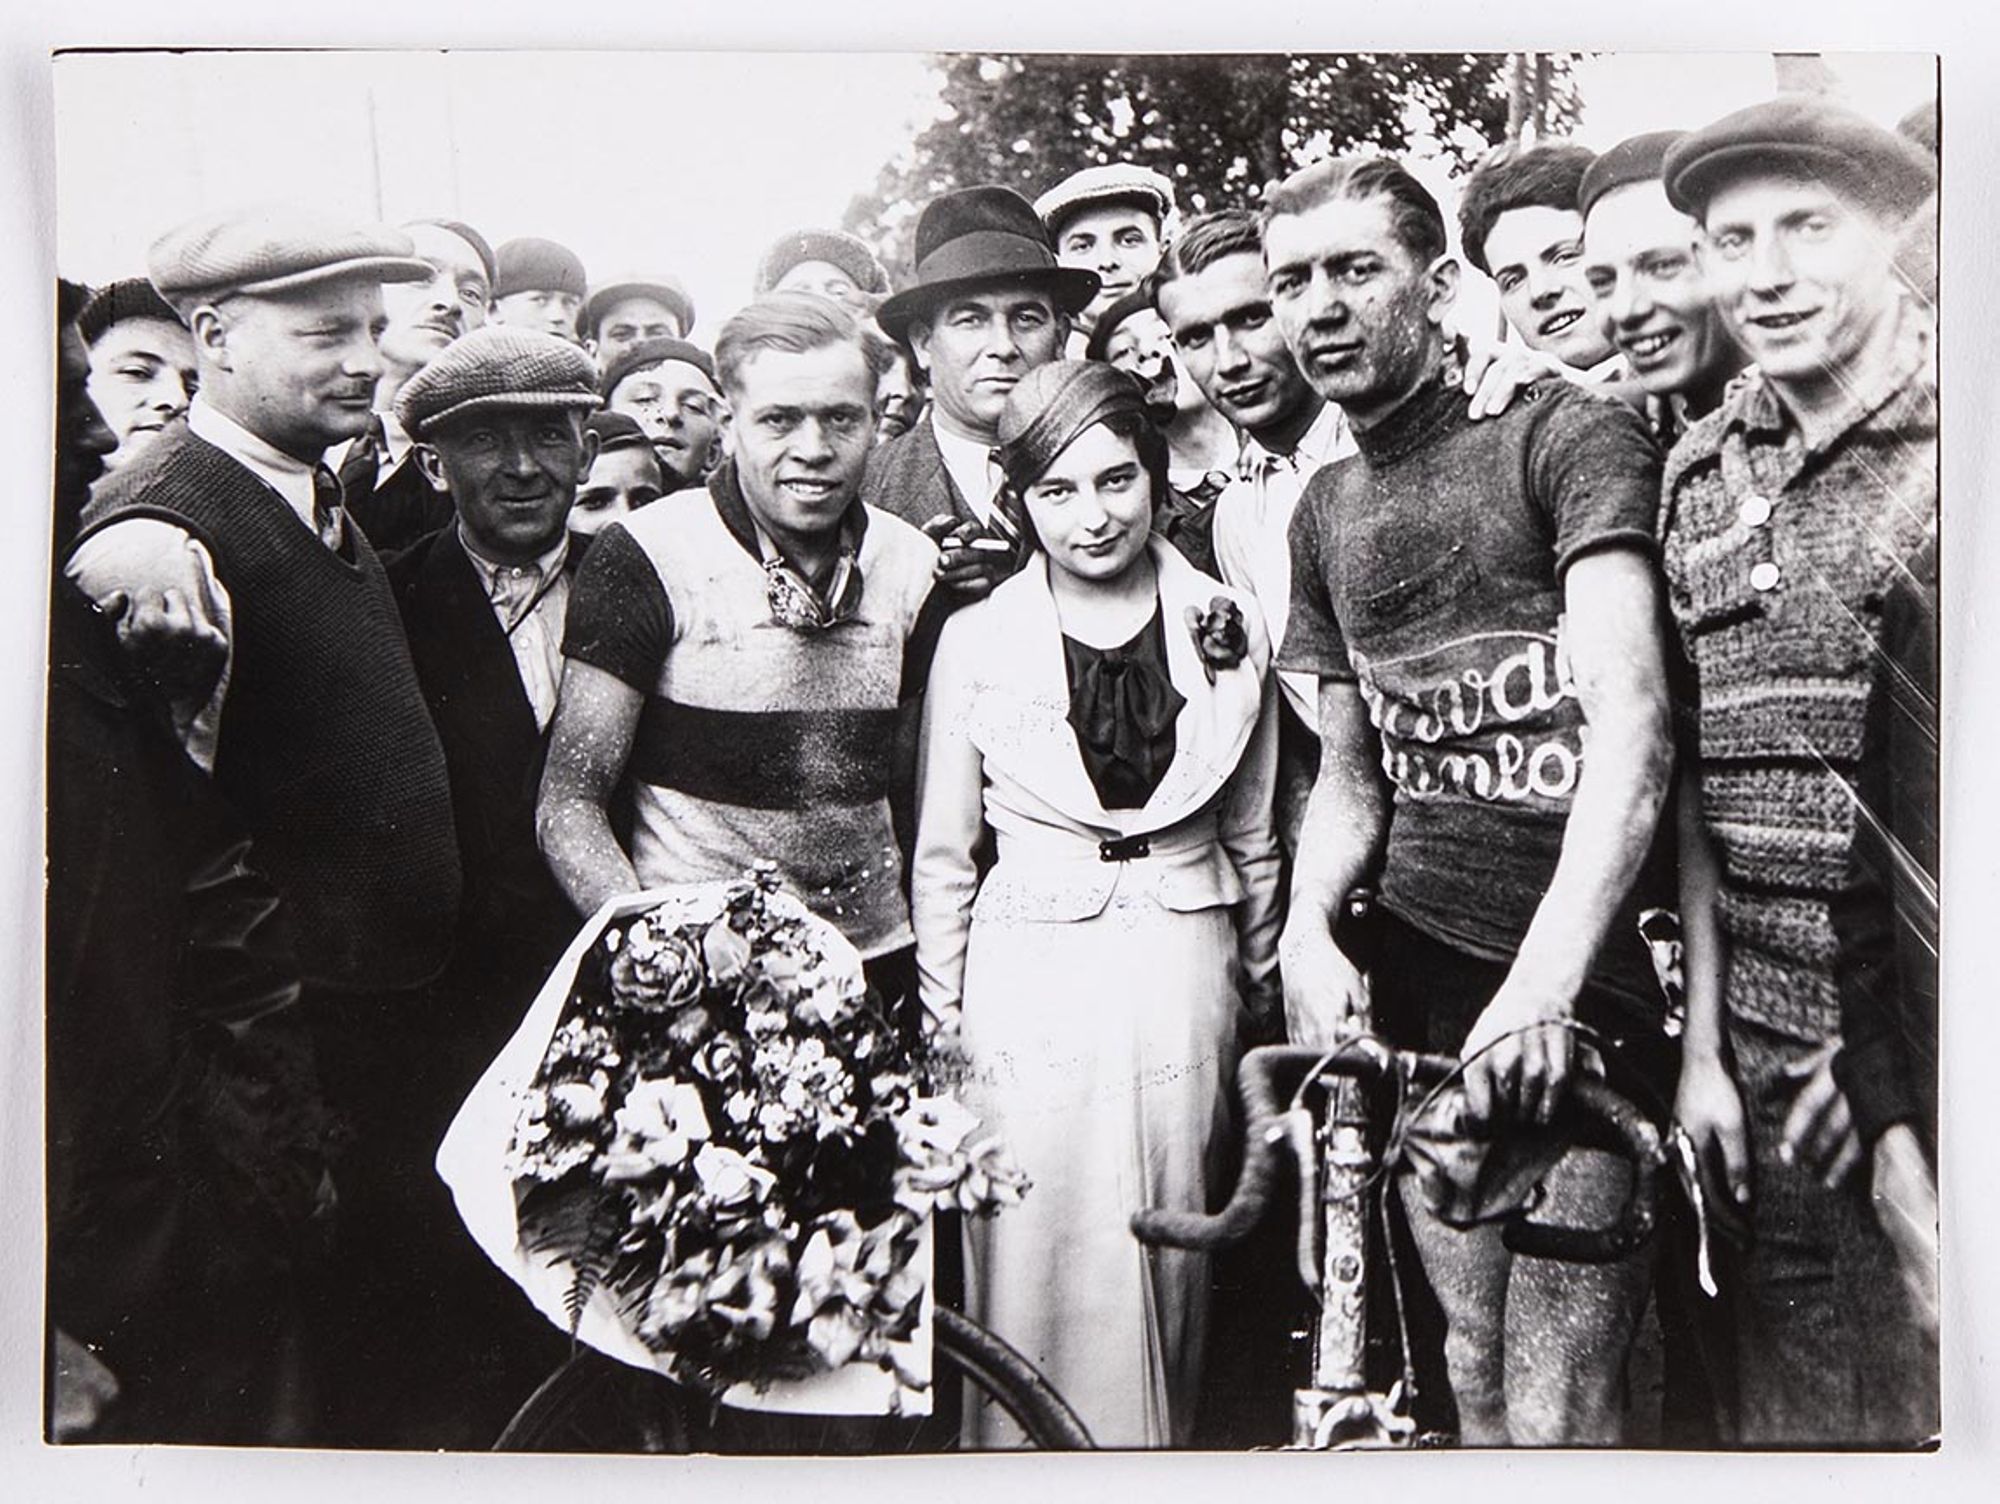 18 juin 1933. Grand prix Celor [huilerie industrielle de Saint-Ouen], organisé par le Vélo-club savinien. Photographie des vainqueurs : Bernard Masson, premier, et J. Krubs, deuxième, entourent une jeune fille et posent avec M. Guéniot, représentant des h